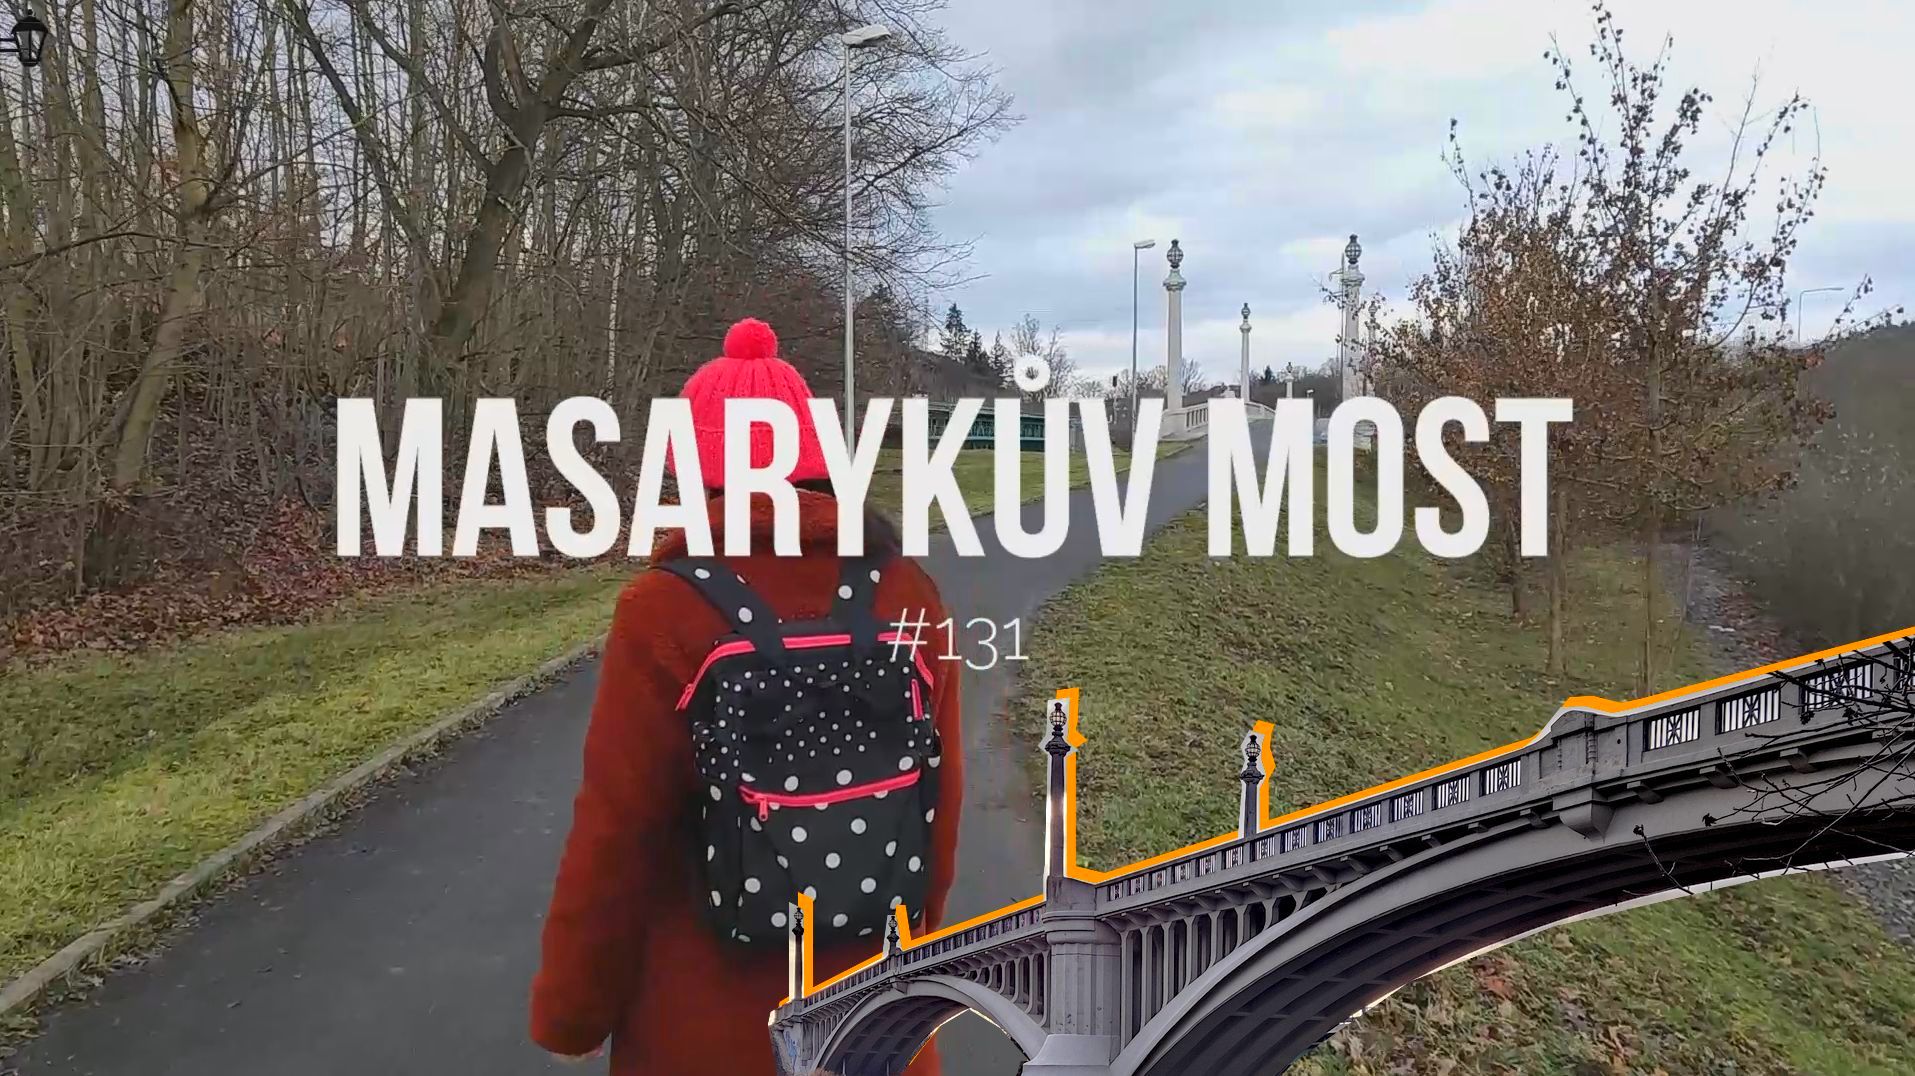 Přečtete si více ze článku Plzeň známá neznámá: Masarykův most